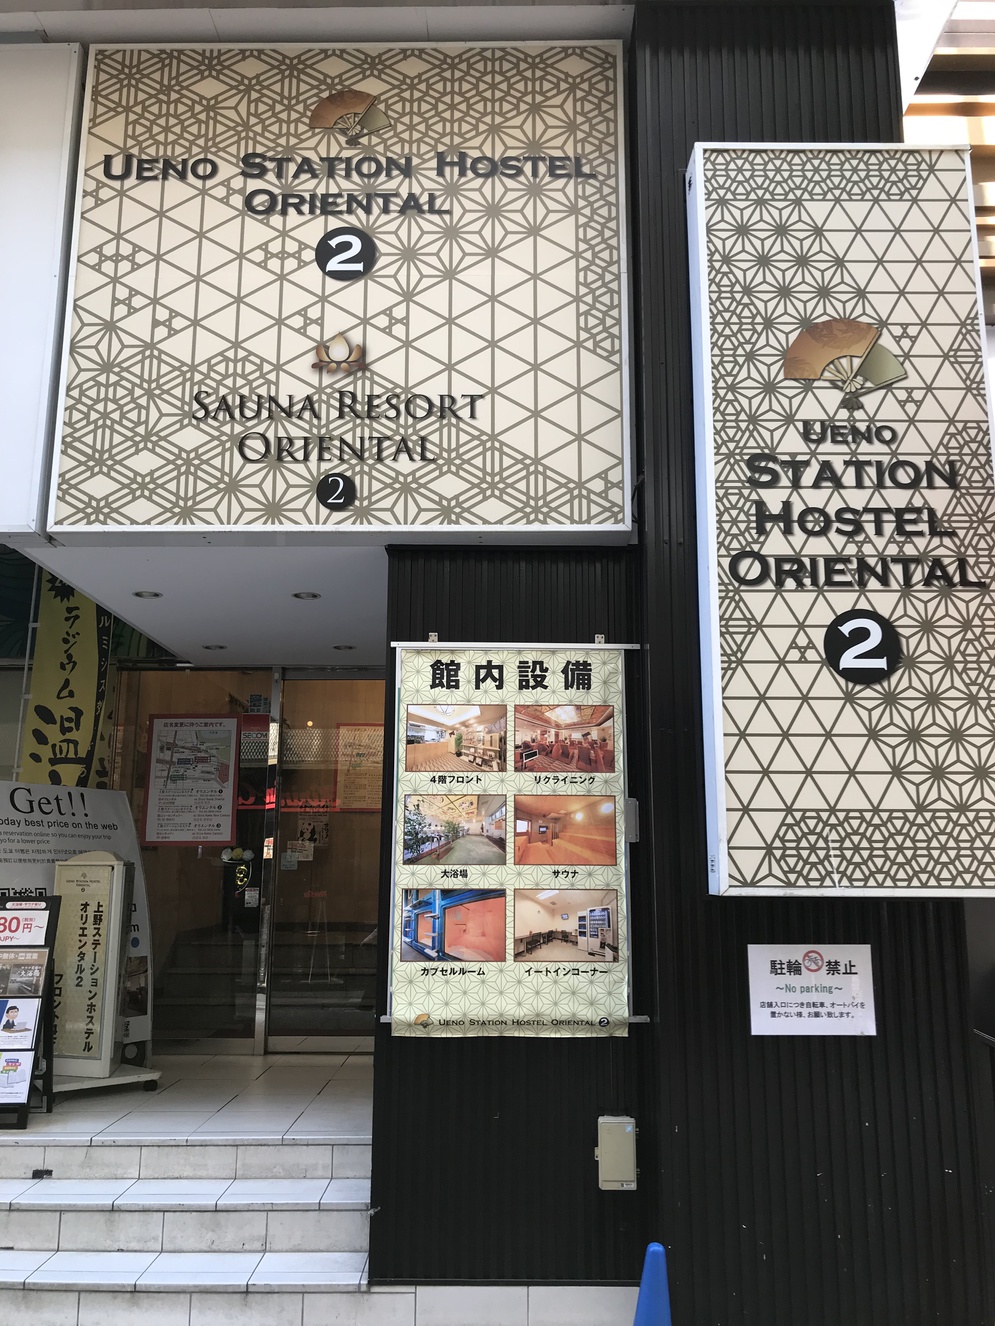 上野ステーションホステル オリエンタル ２ 設備 アメニティ 基本情報 楽天トラベル